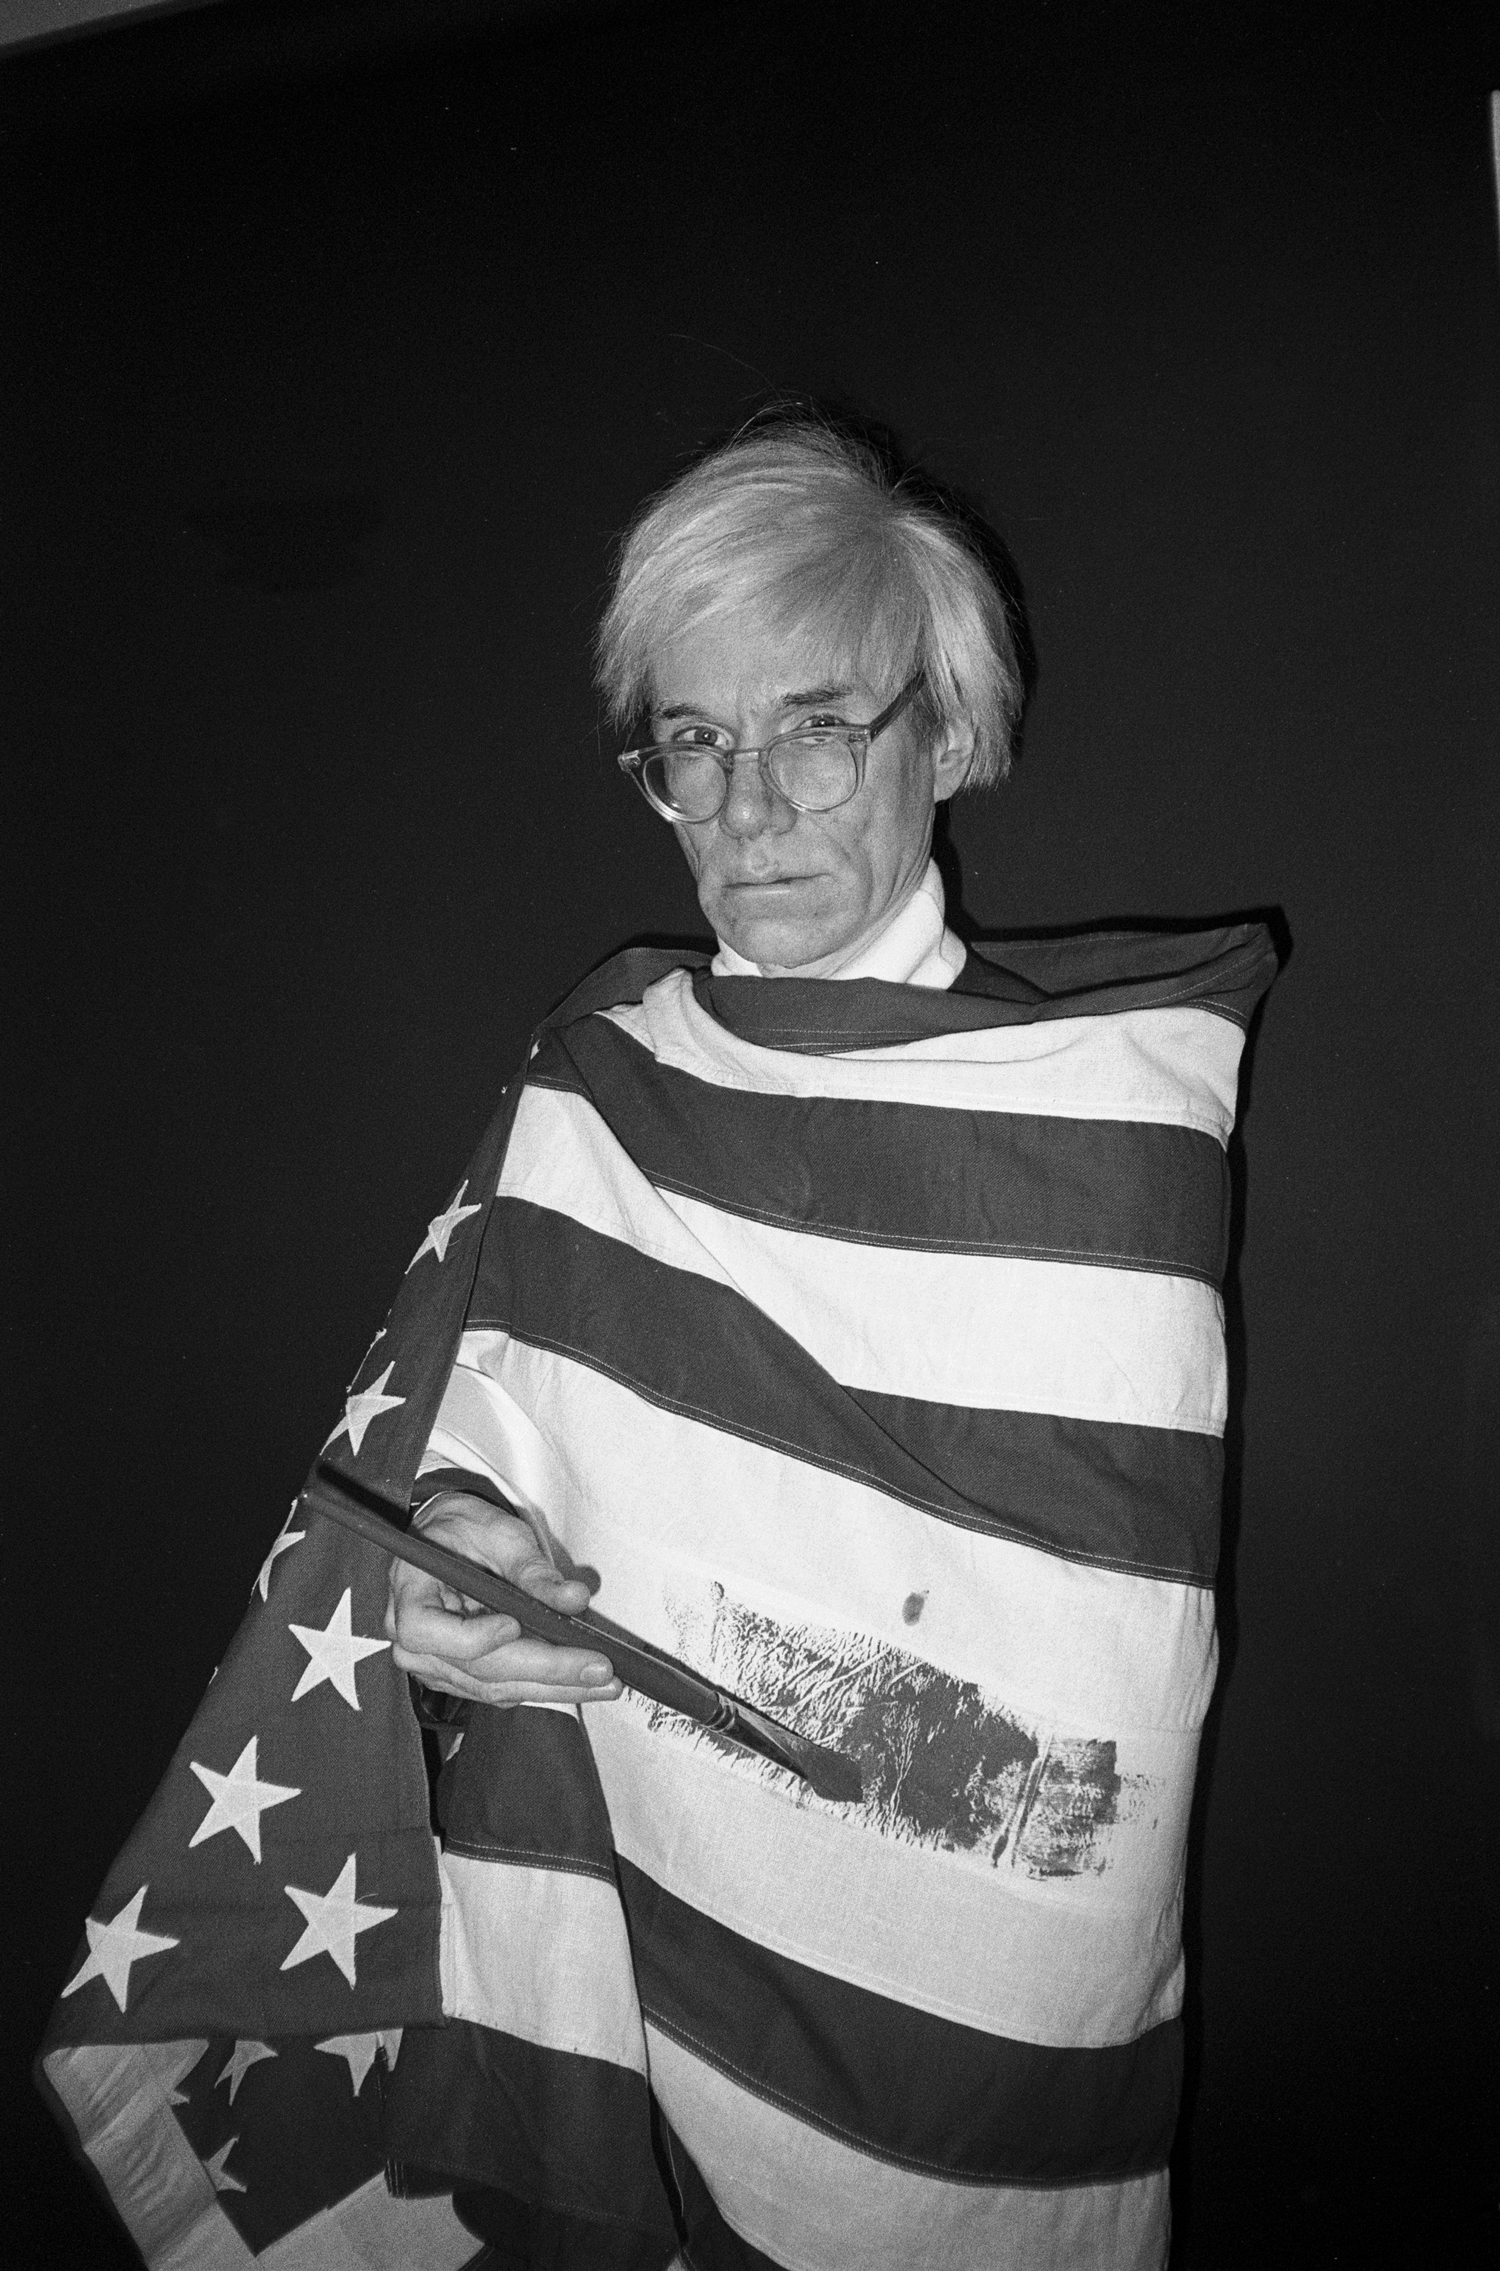 foto preto e branco de Andy Warhol, enrolado na bandeira dos Estados Unidos. Usa óculos redondos de arame e sua característica peruca loira, enquanto sua mão, segurando um grande pincel preto, pinta outra faixa, provavelmente azul, na parte branca da bandeira. O fundo é escuro.